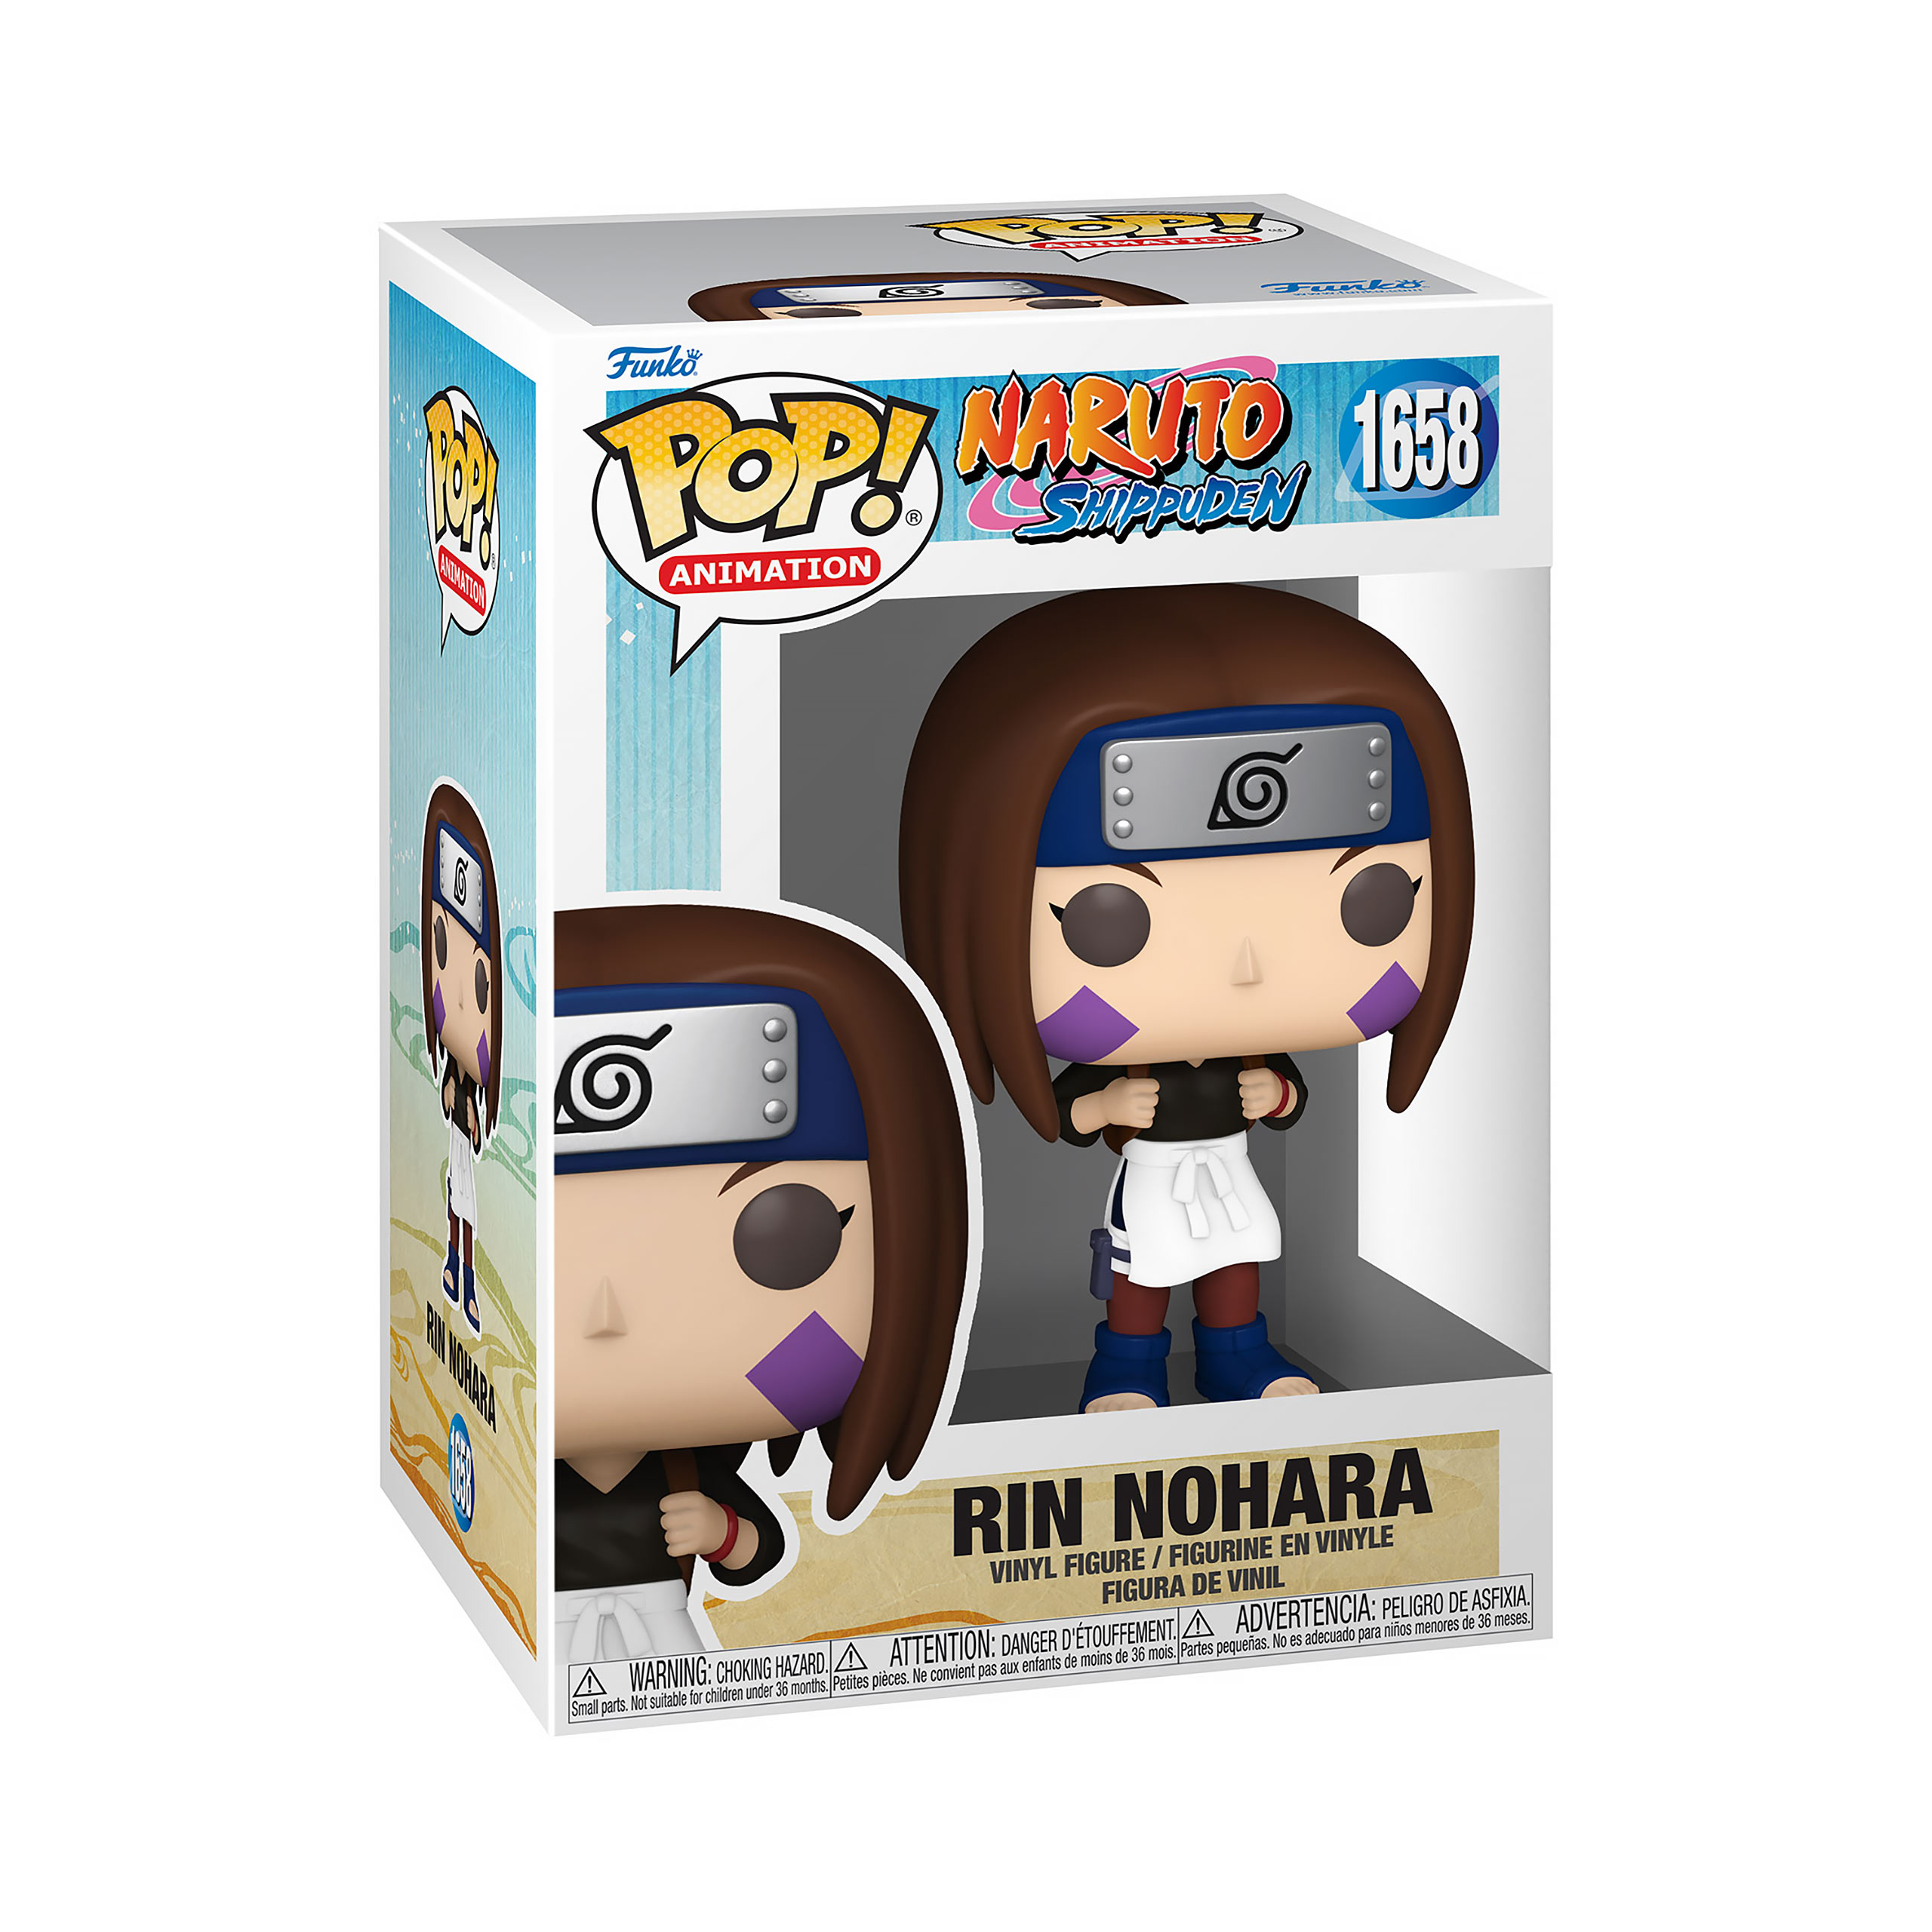 Naruto - Rin Nohara Funko Pop Figure